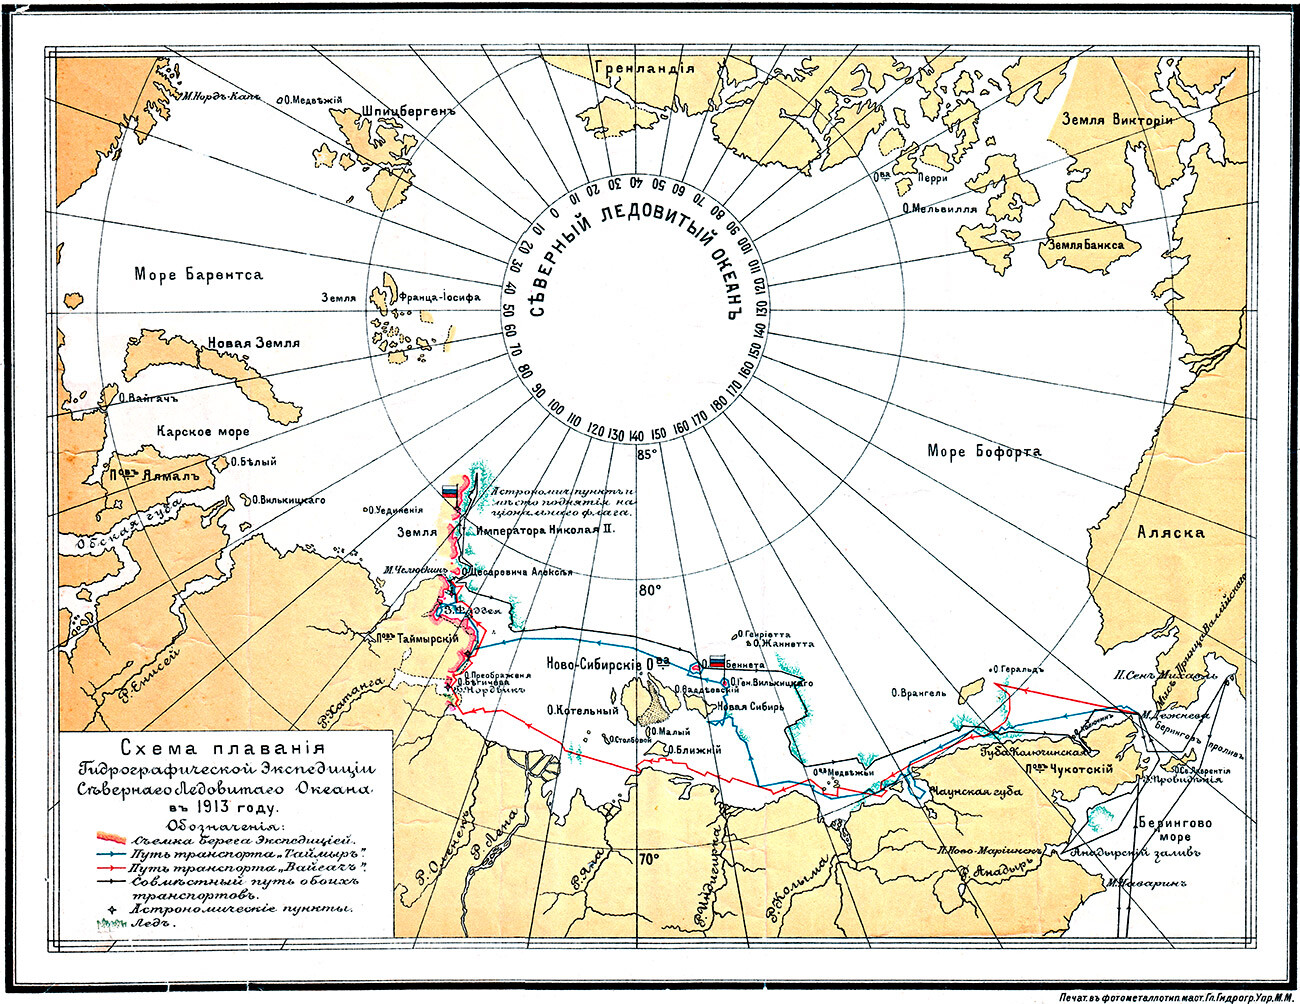 Schema der Reise der Hydrographischen Expedition in den Arktischen Ozean im Jahr 1913.